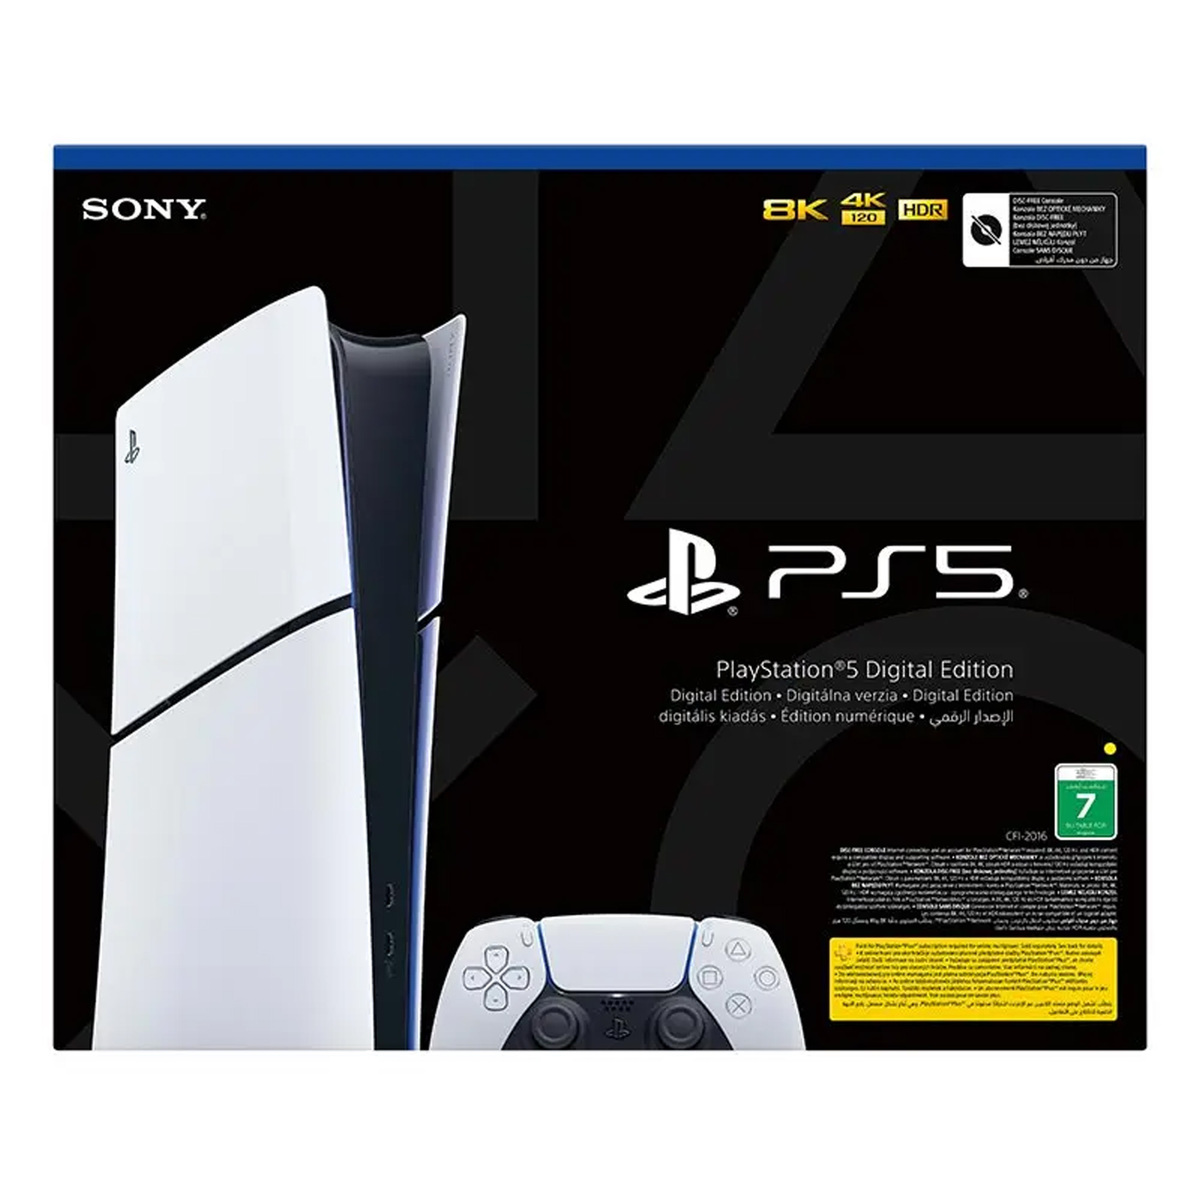 Sony PlayStation 5 Slim Console - Digital Edition